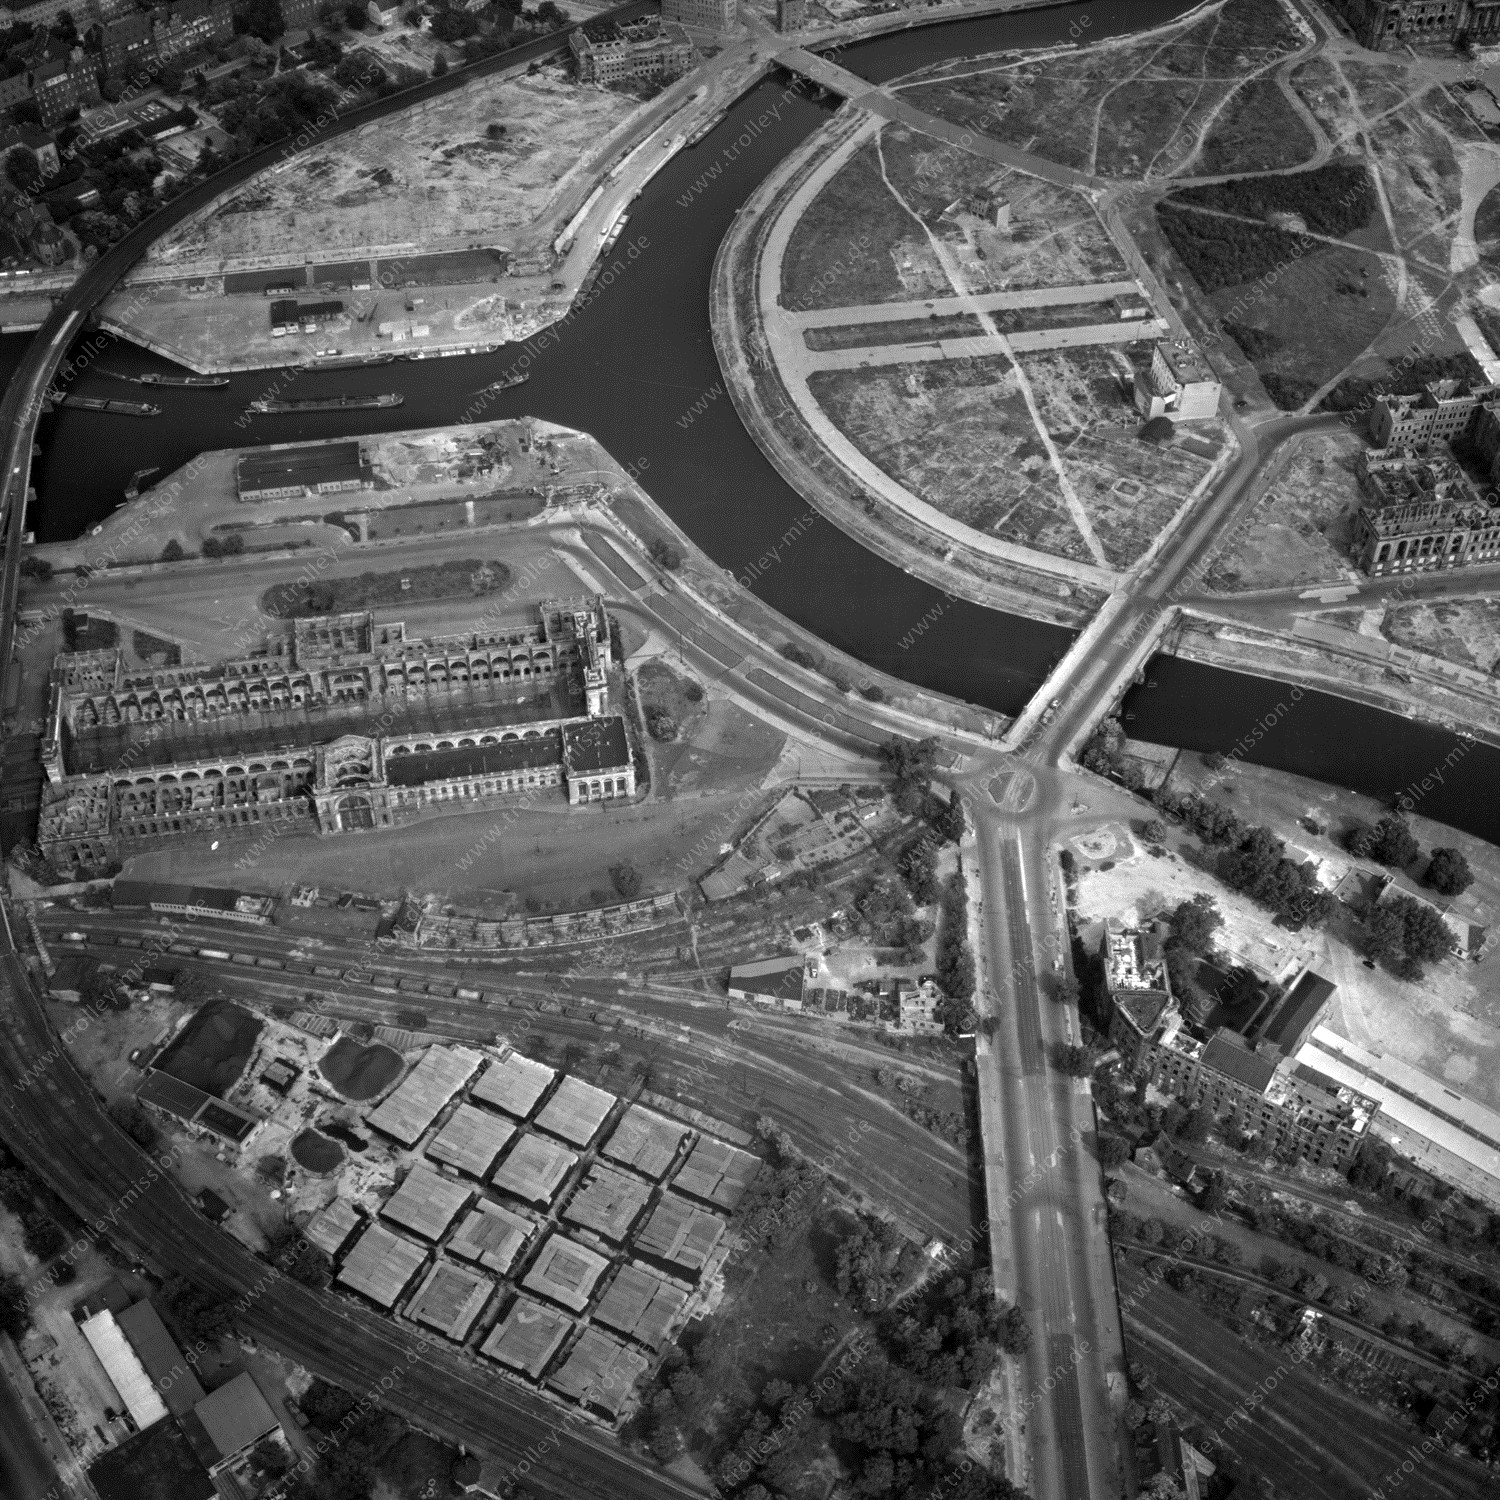 Alte Fotos und Luftbilder von Berlin - Luftbildaufnahme Nr. 08 - Historische Luftaufnahmen von West-Berlin aus dem Jahr 1954 - Flugstrecke Xray